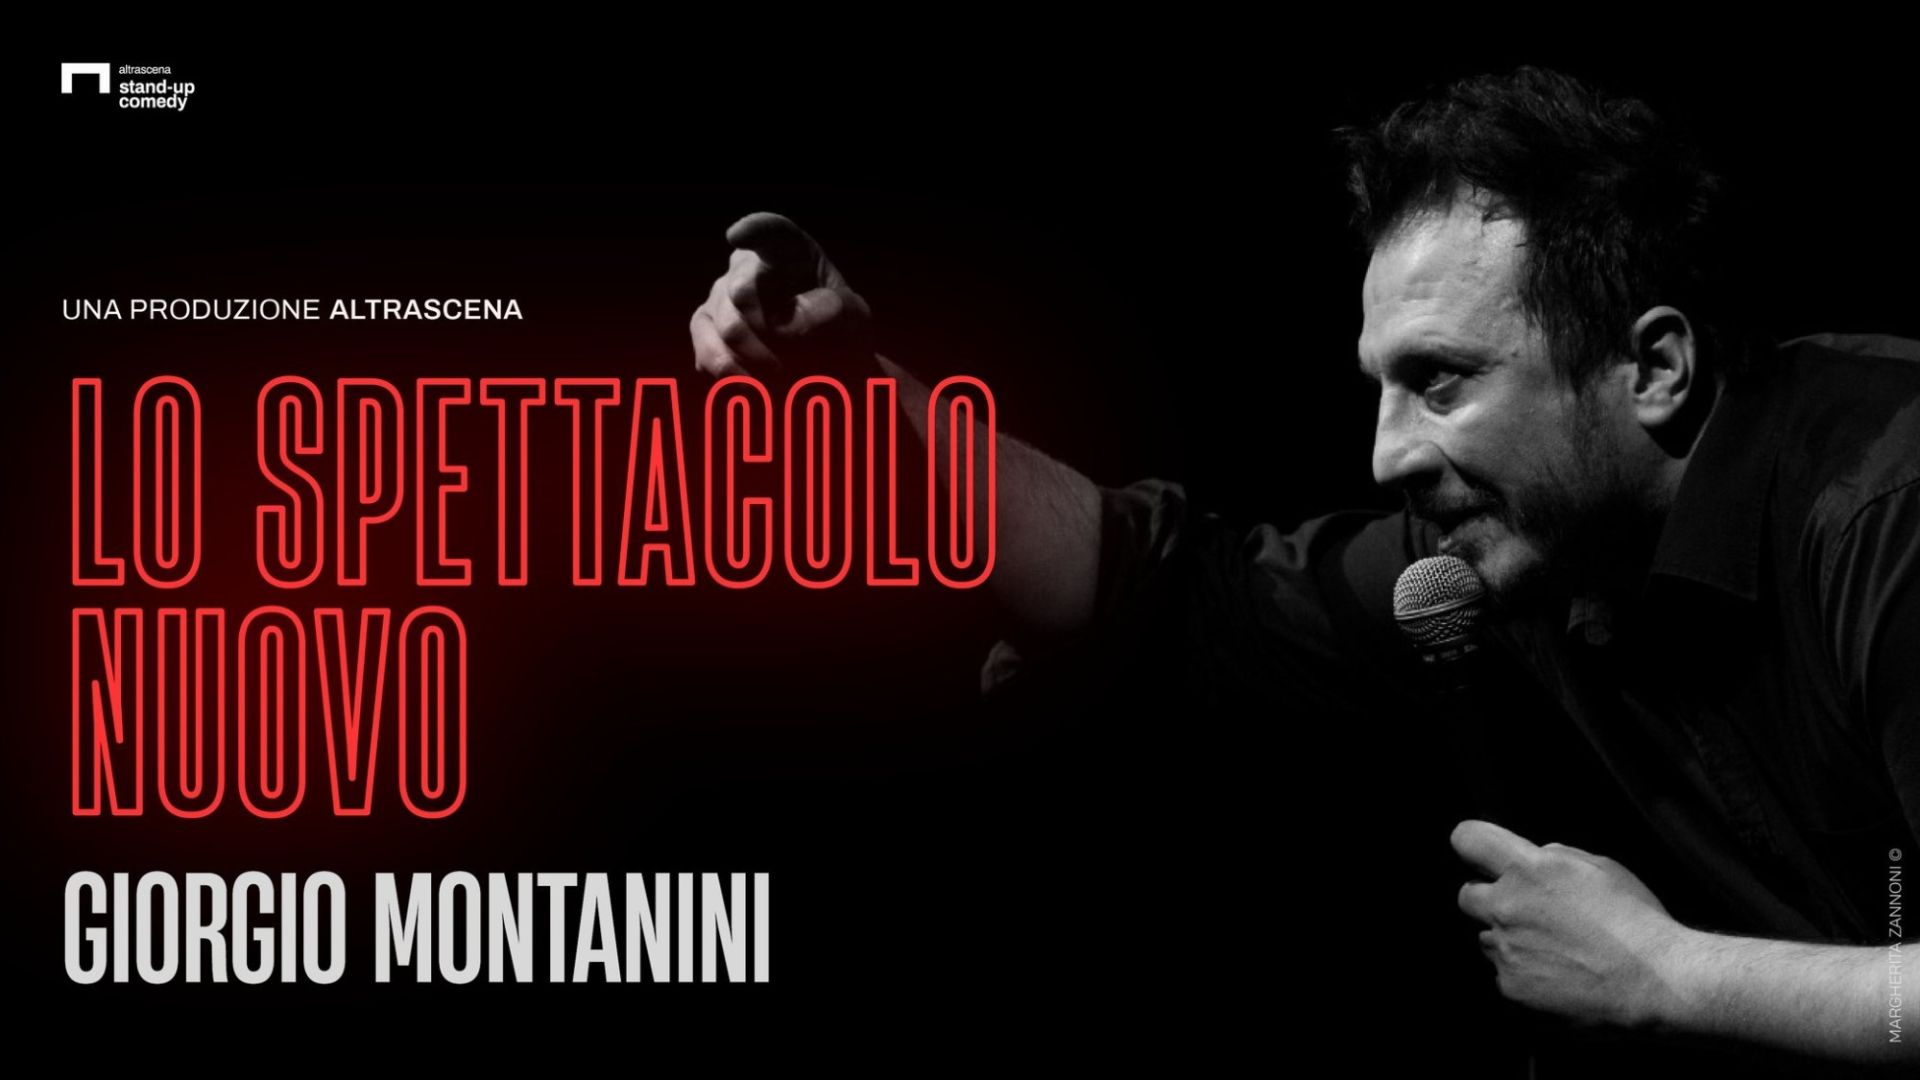 Giorgio Montanini | Lo spettacolo nuovo